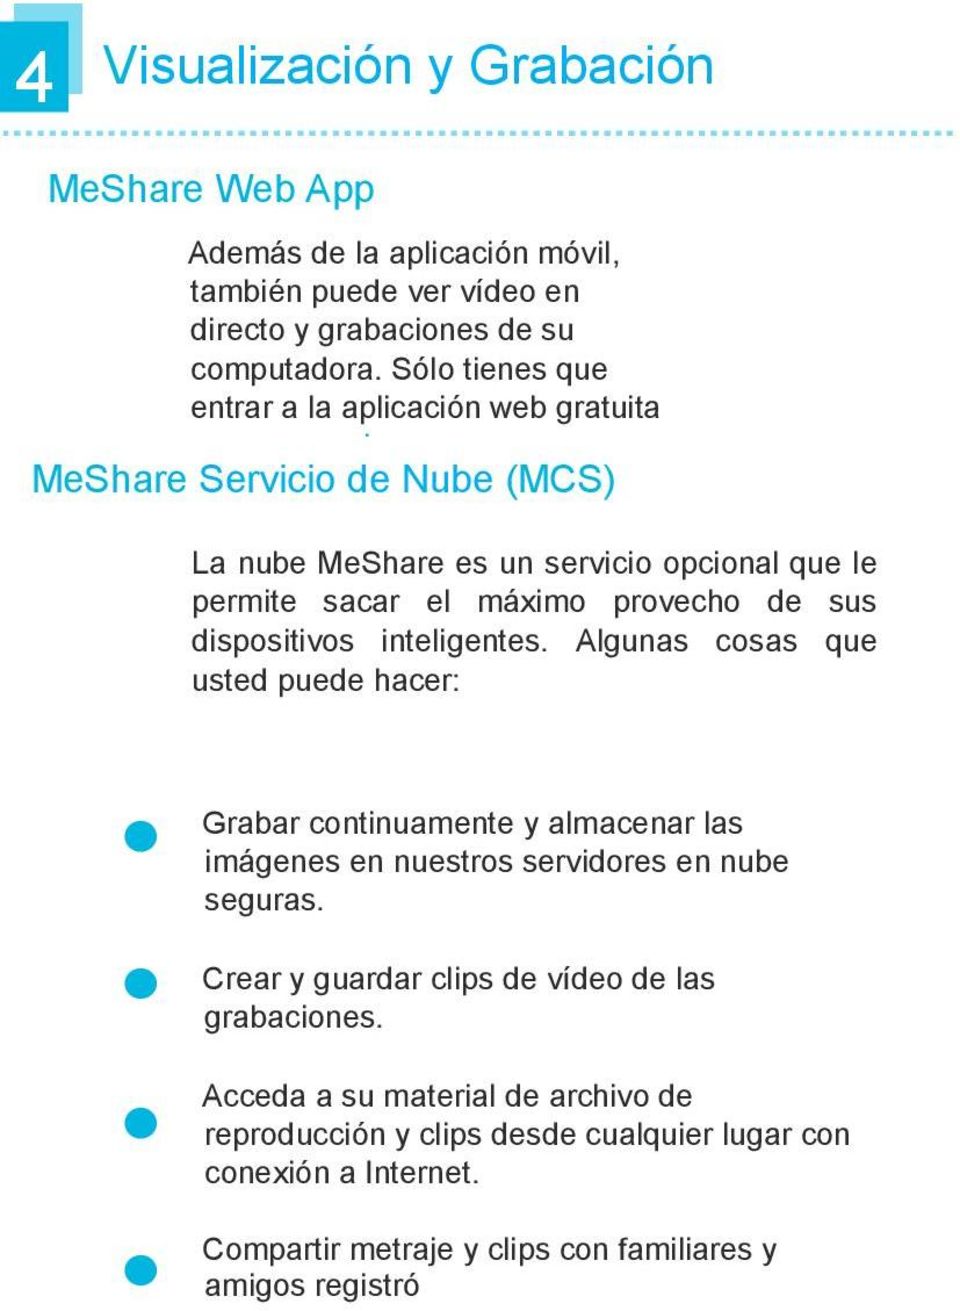 La nube MeShare es un servicio opcional que le permite sacar el máximo provecho de sus dispositivos inteligentes.